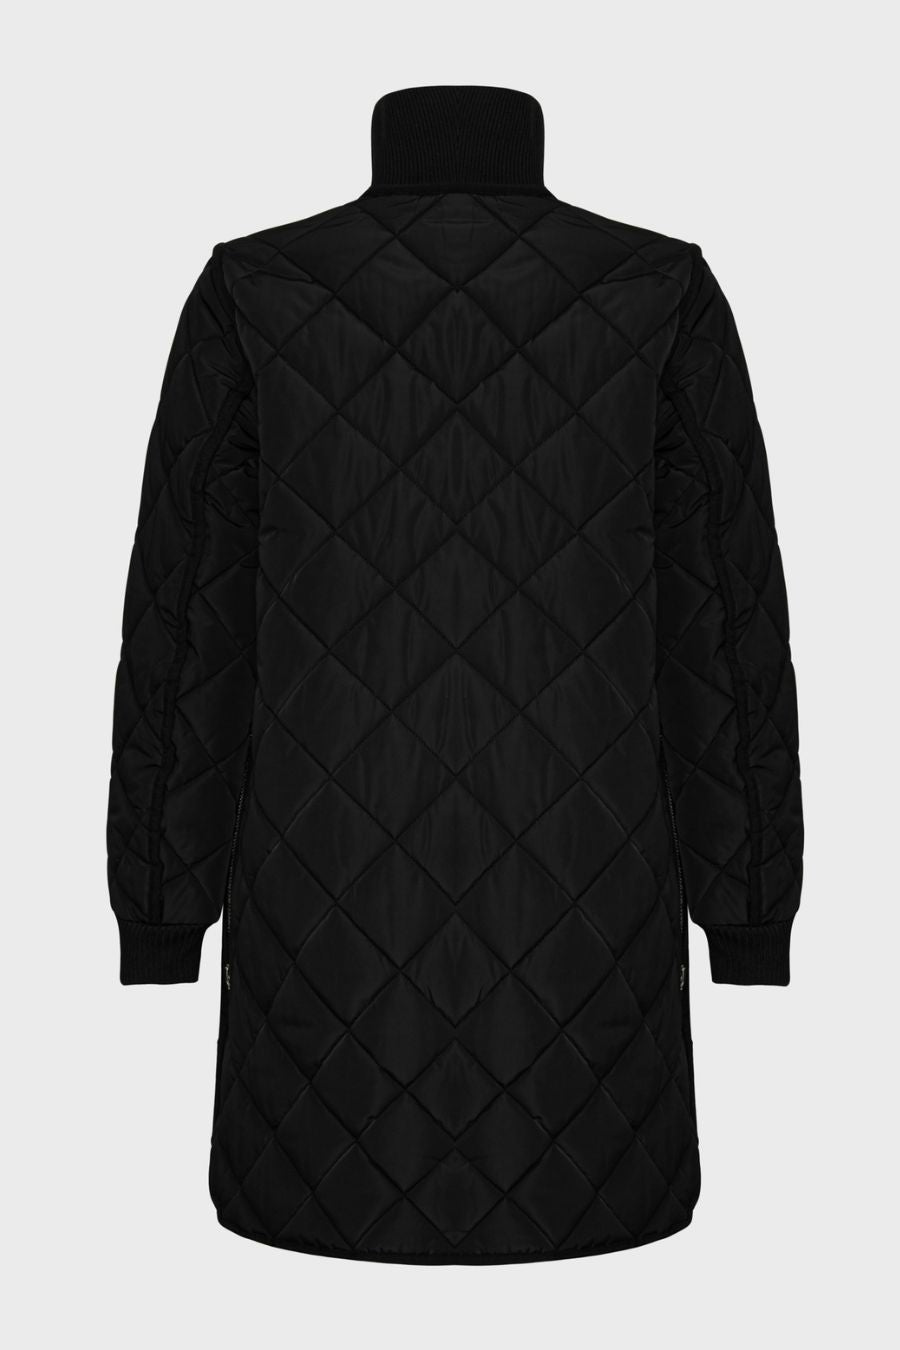 Libby Coat in Black